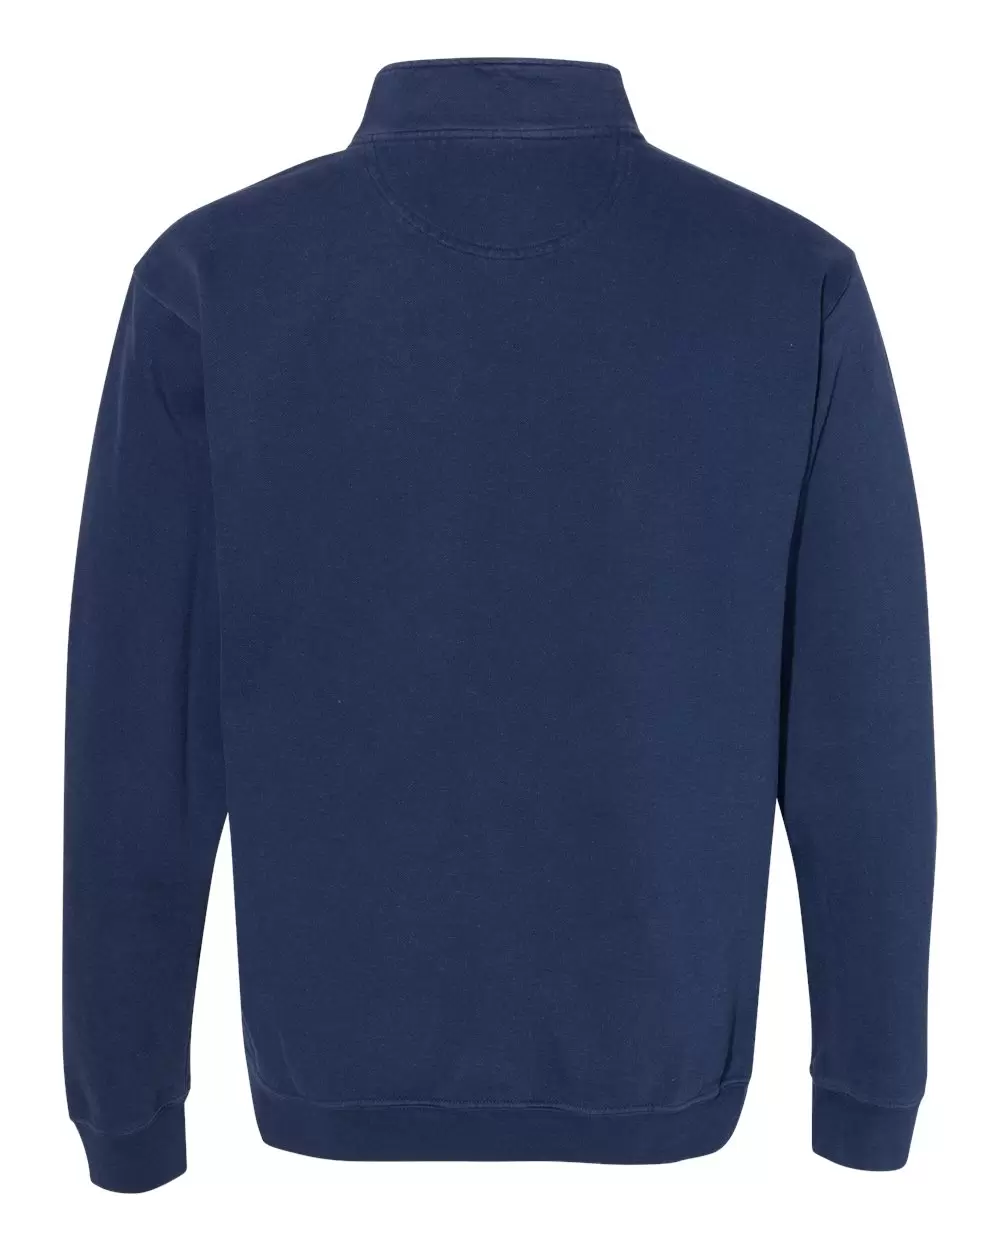 Comfort Colors 1580 Adult Quarter-Zip Sweatshirt - FLO BLUE